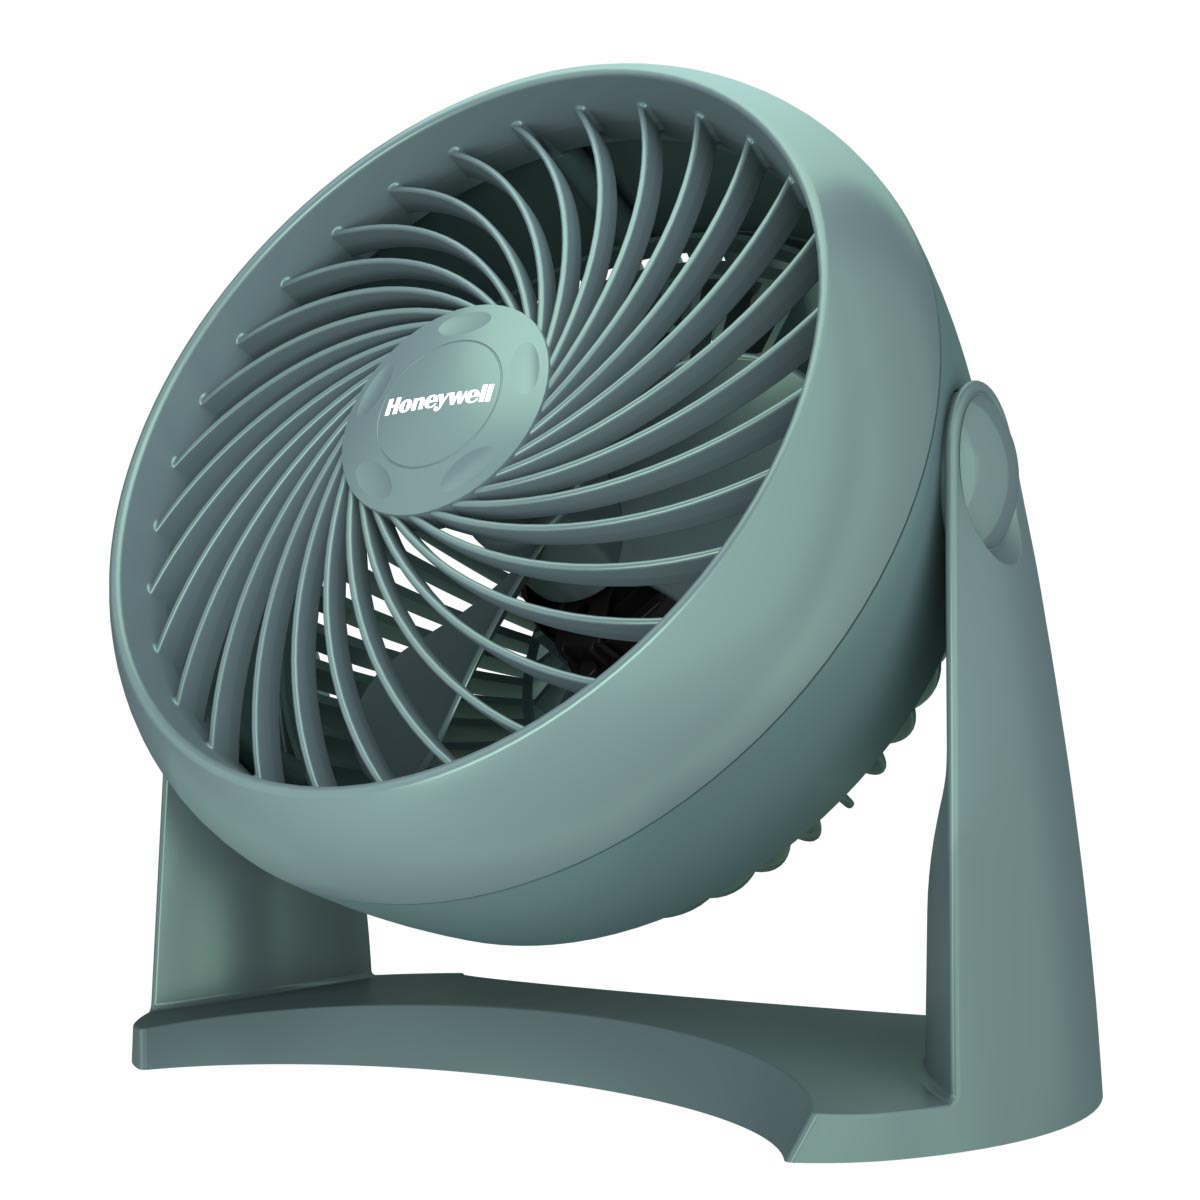 Honeywell TurboForce Power Air Circulator Fan - Green, HT900G